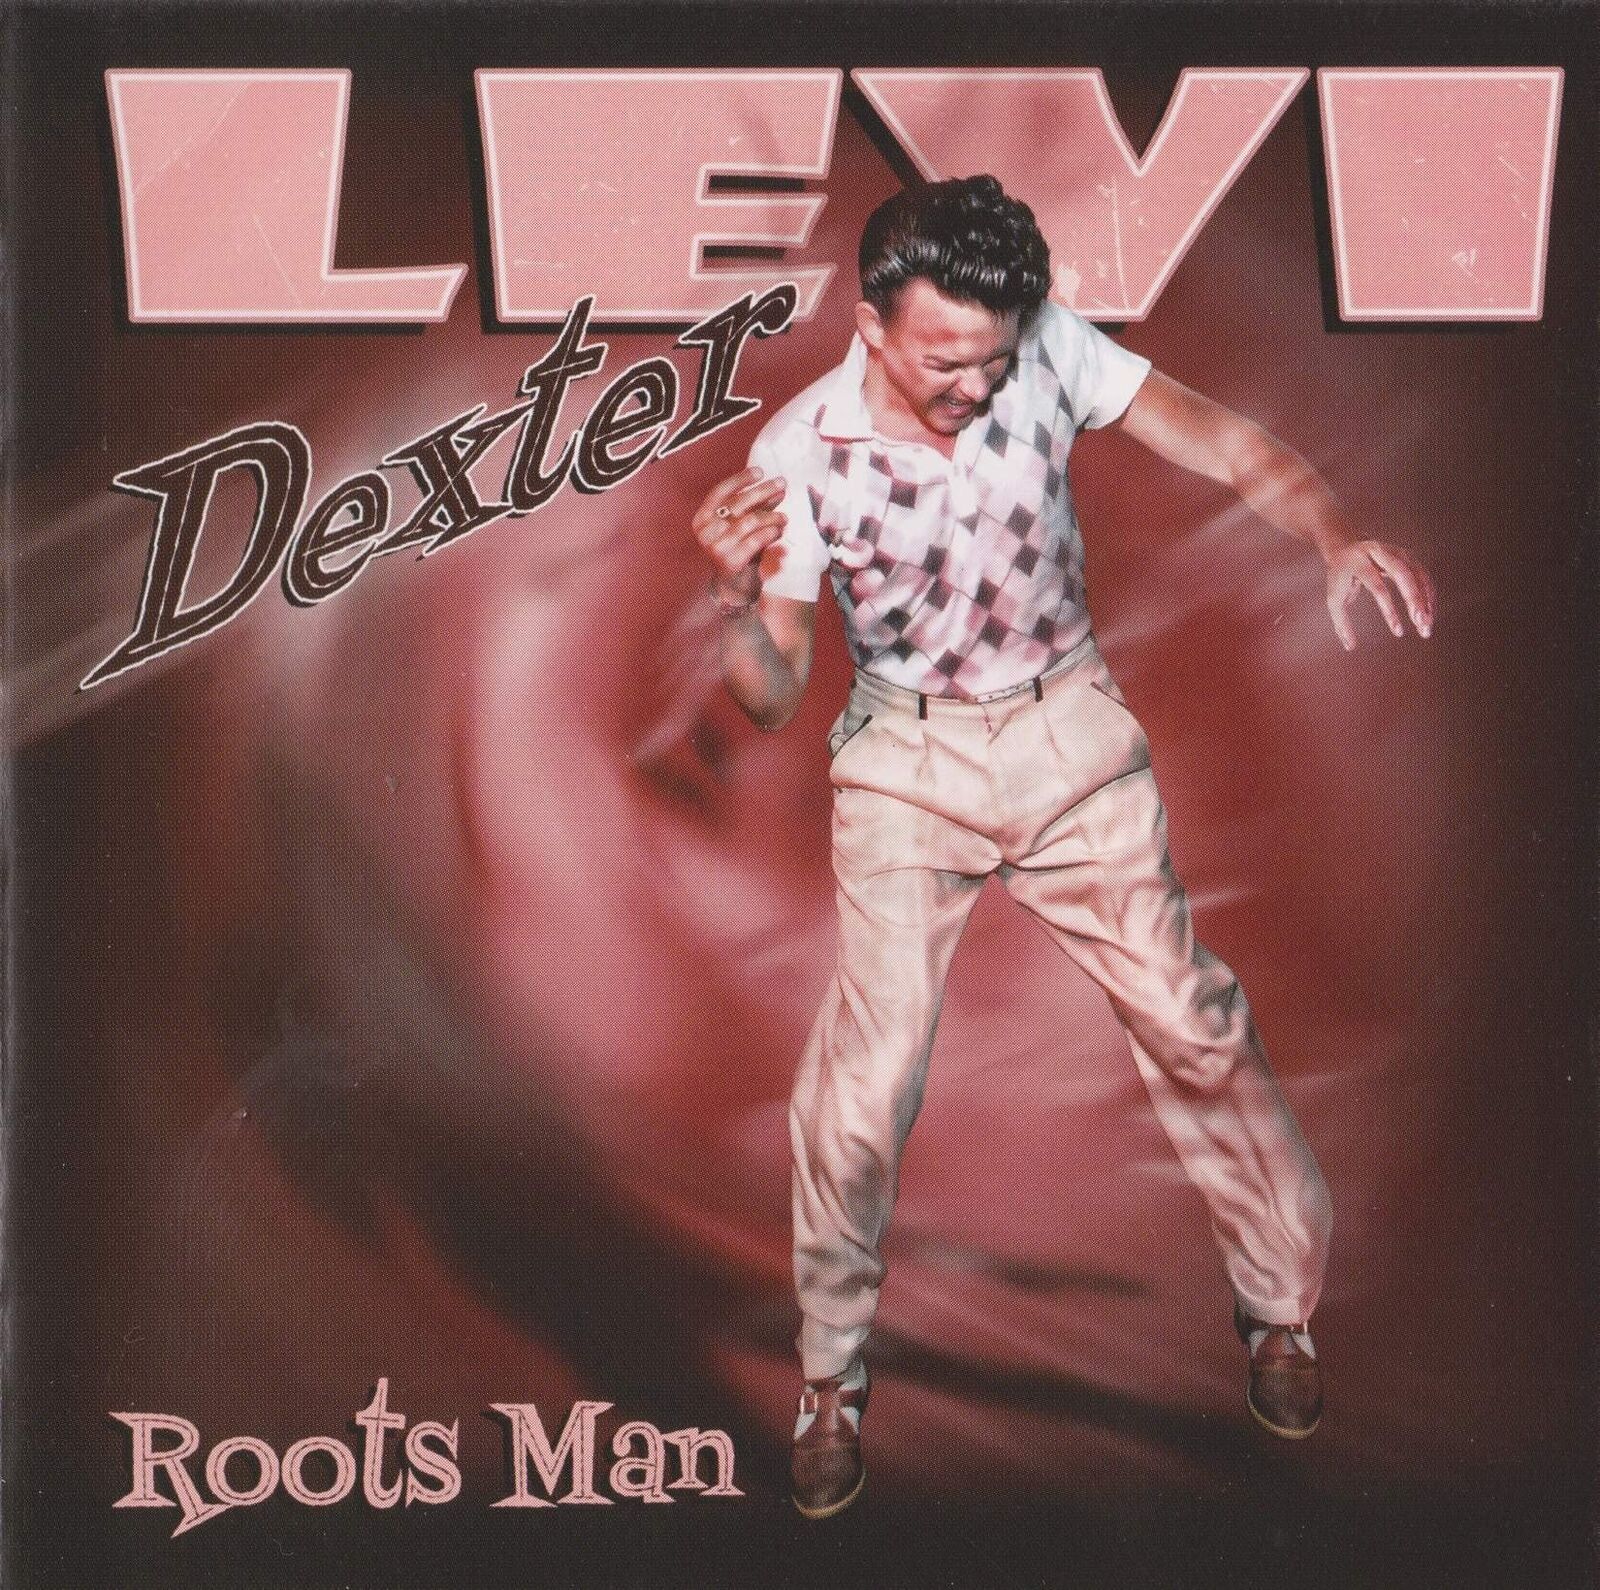 Levi Dexter Roots Man (CD)